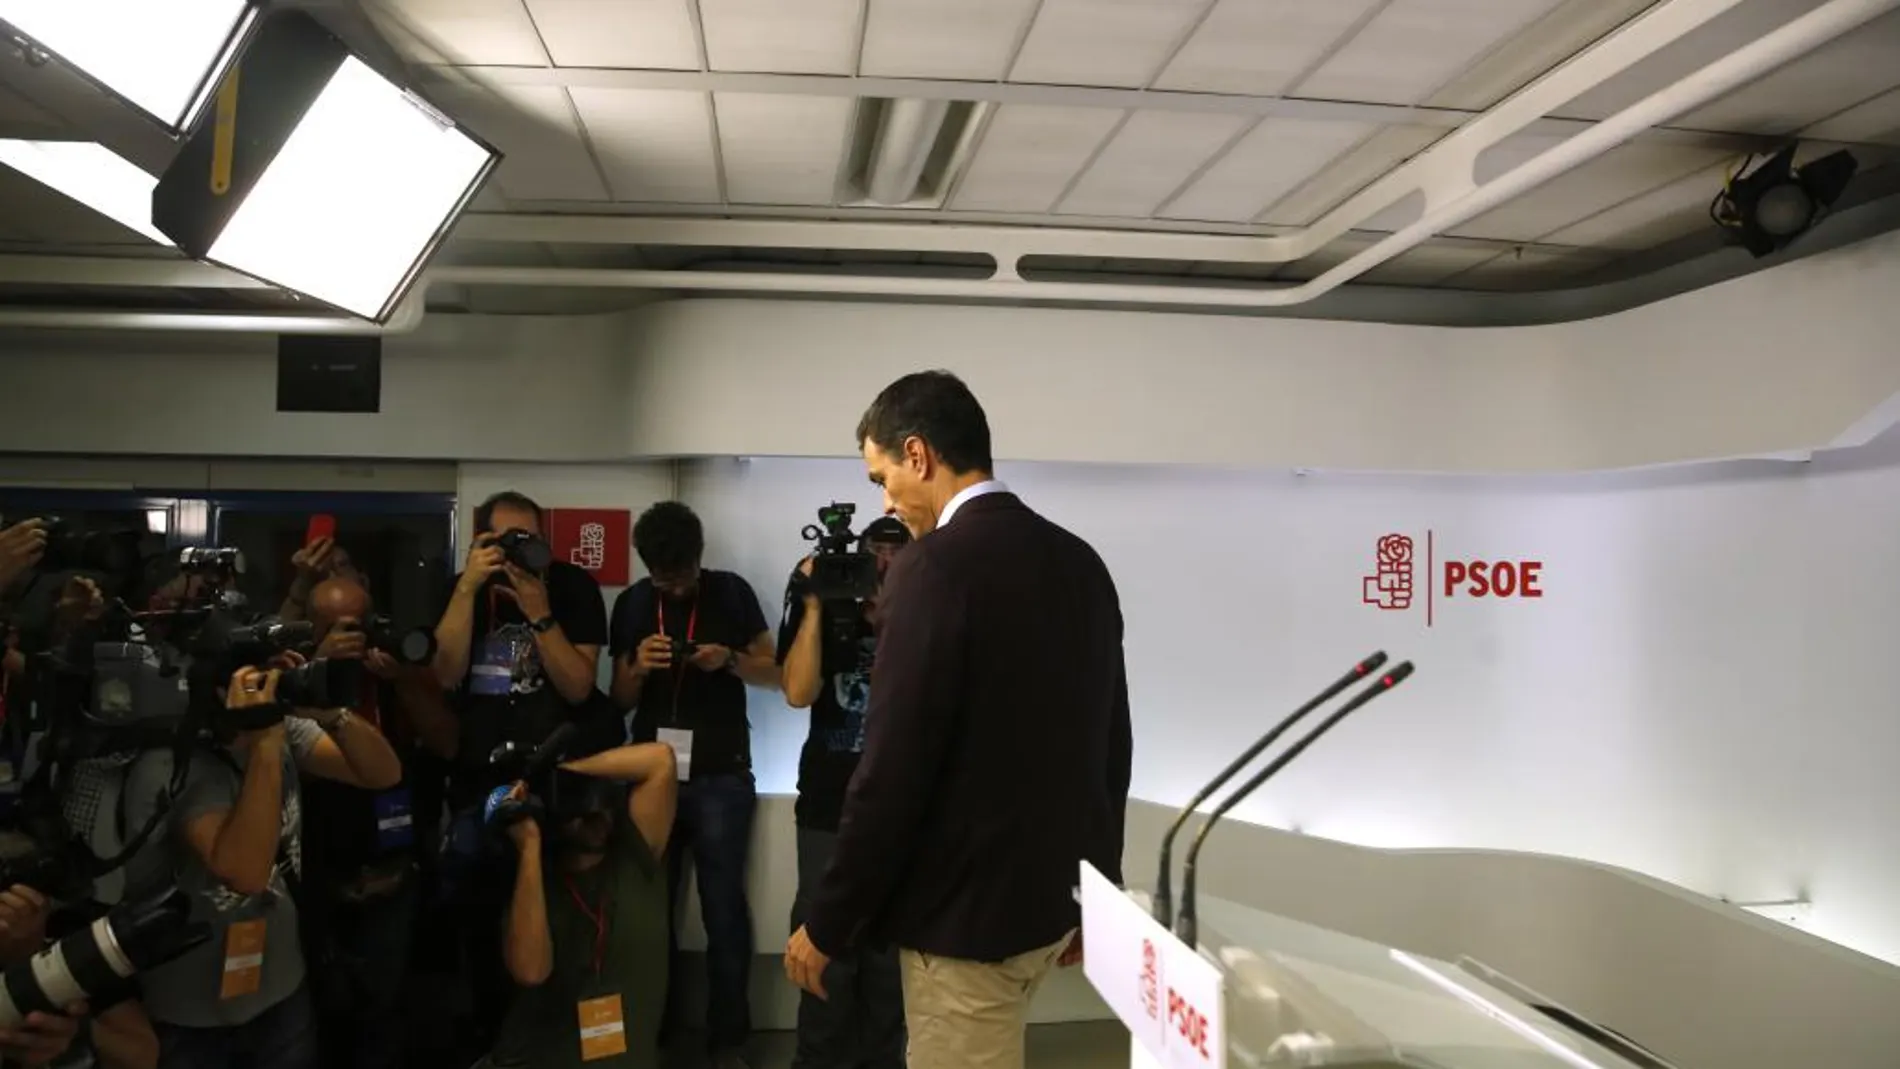 Pedro Sánchez en la rueda de prensa en la que anunció su dimisión